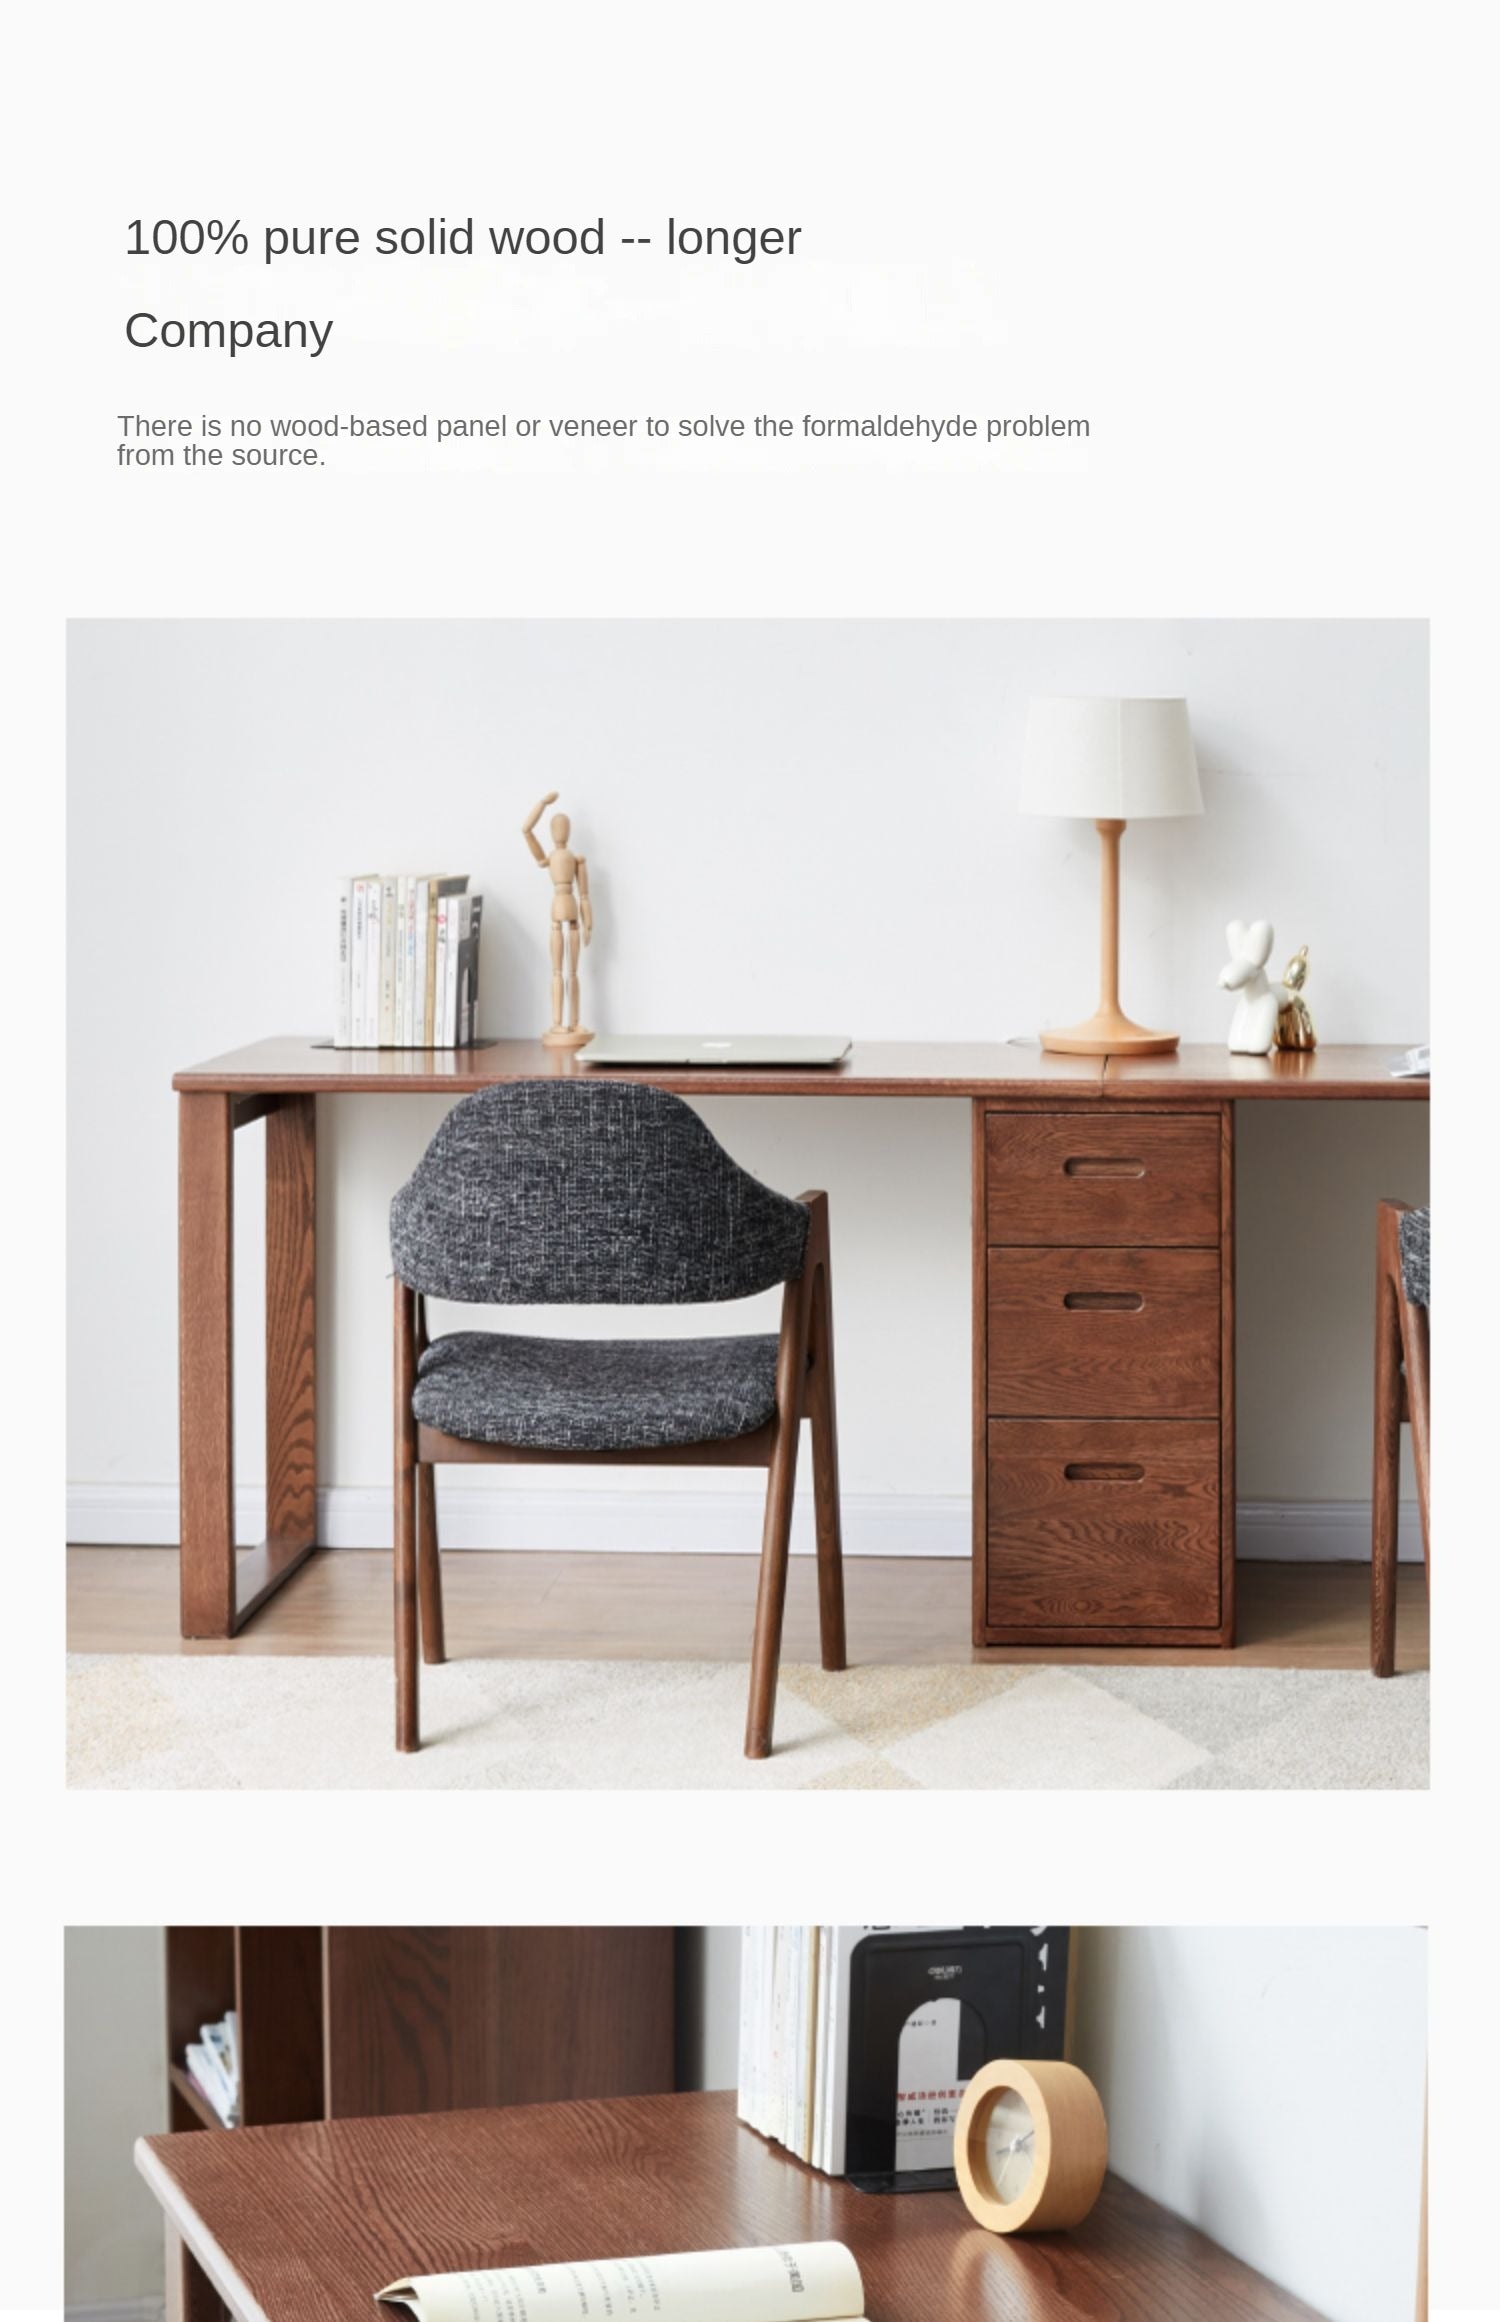 Oak Solid Wood Walnut color office Desk,"Together" combination desk-